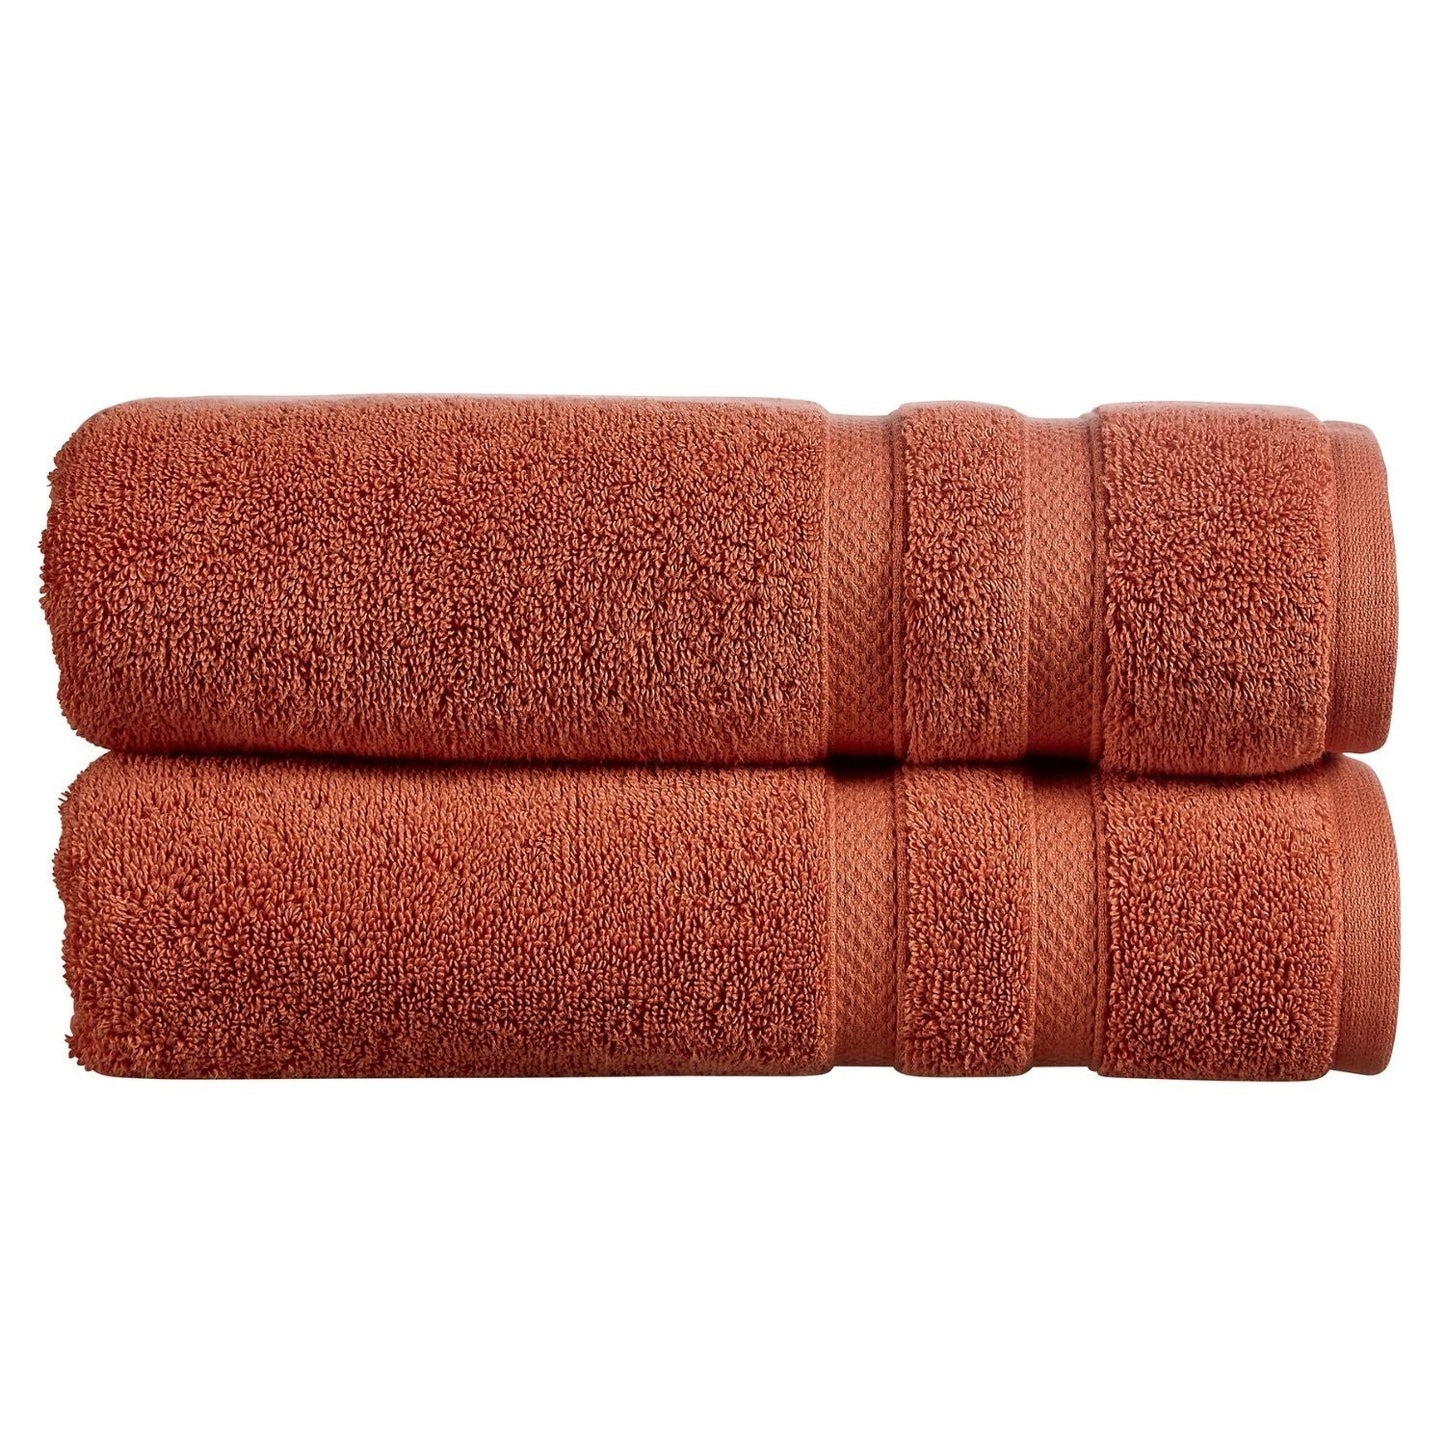 Chroma Bath Towel - Burnt Sienna